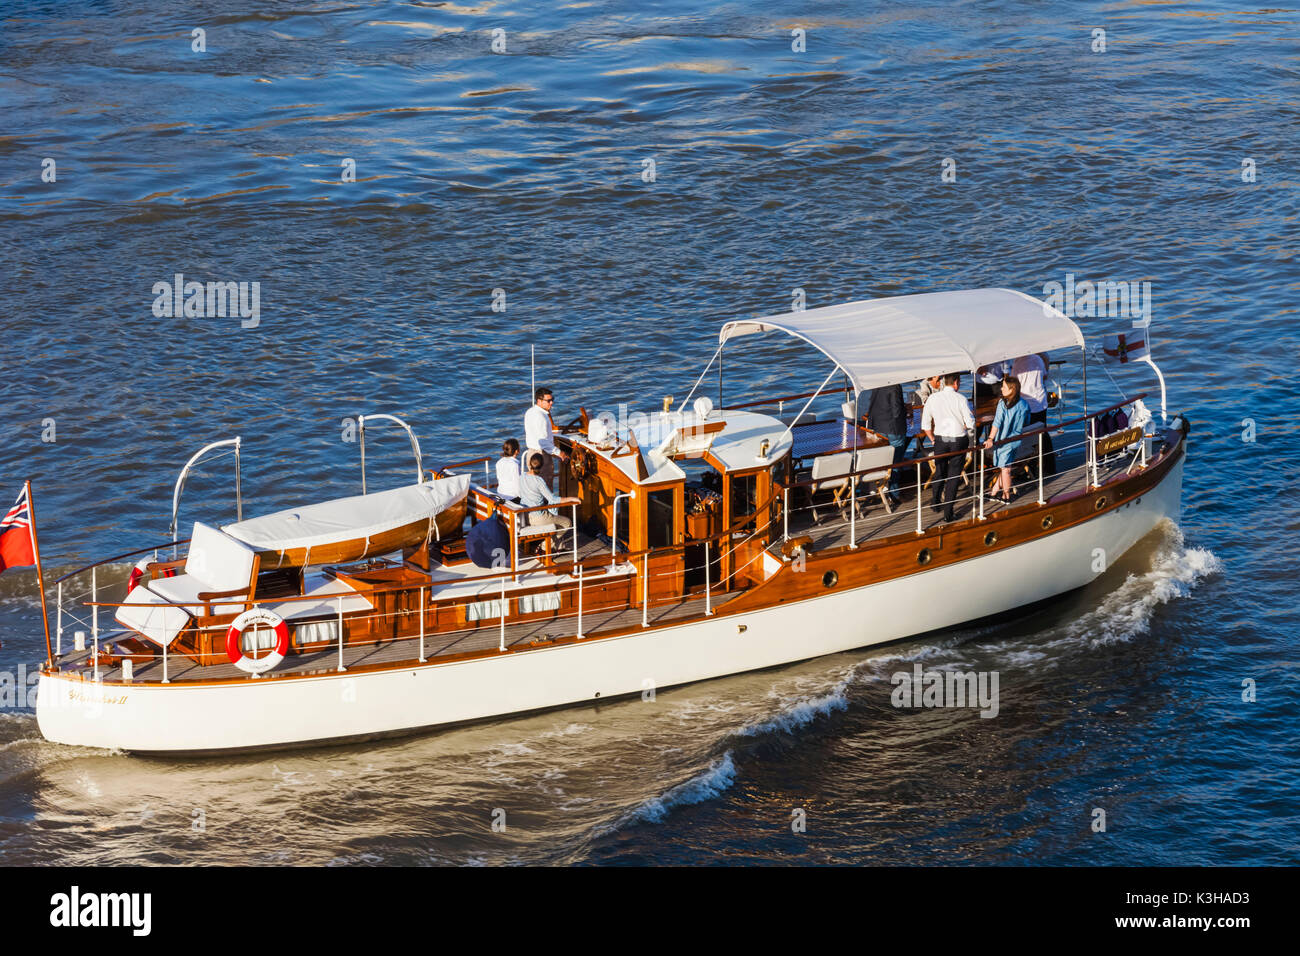 Inglaterra, Londres, Small Luxury lancha sobre el río Támesis Foto de stock